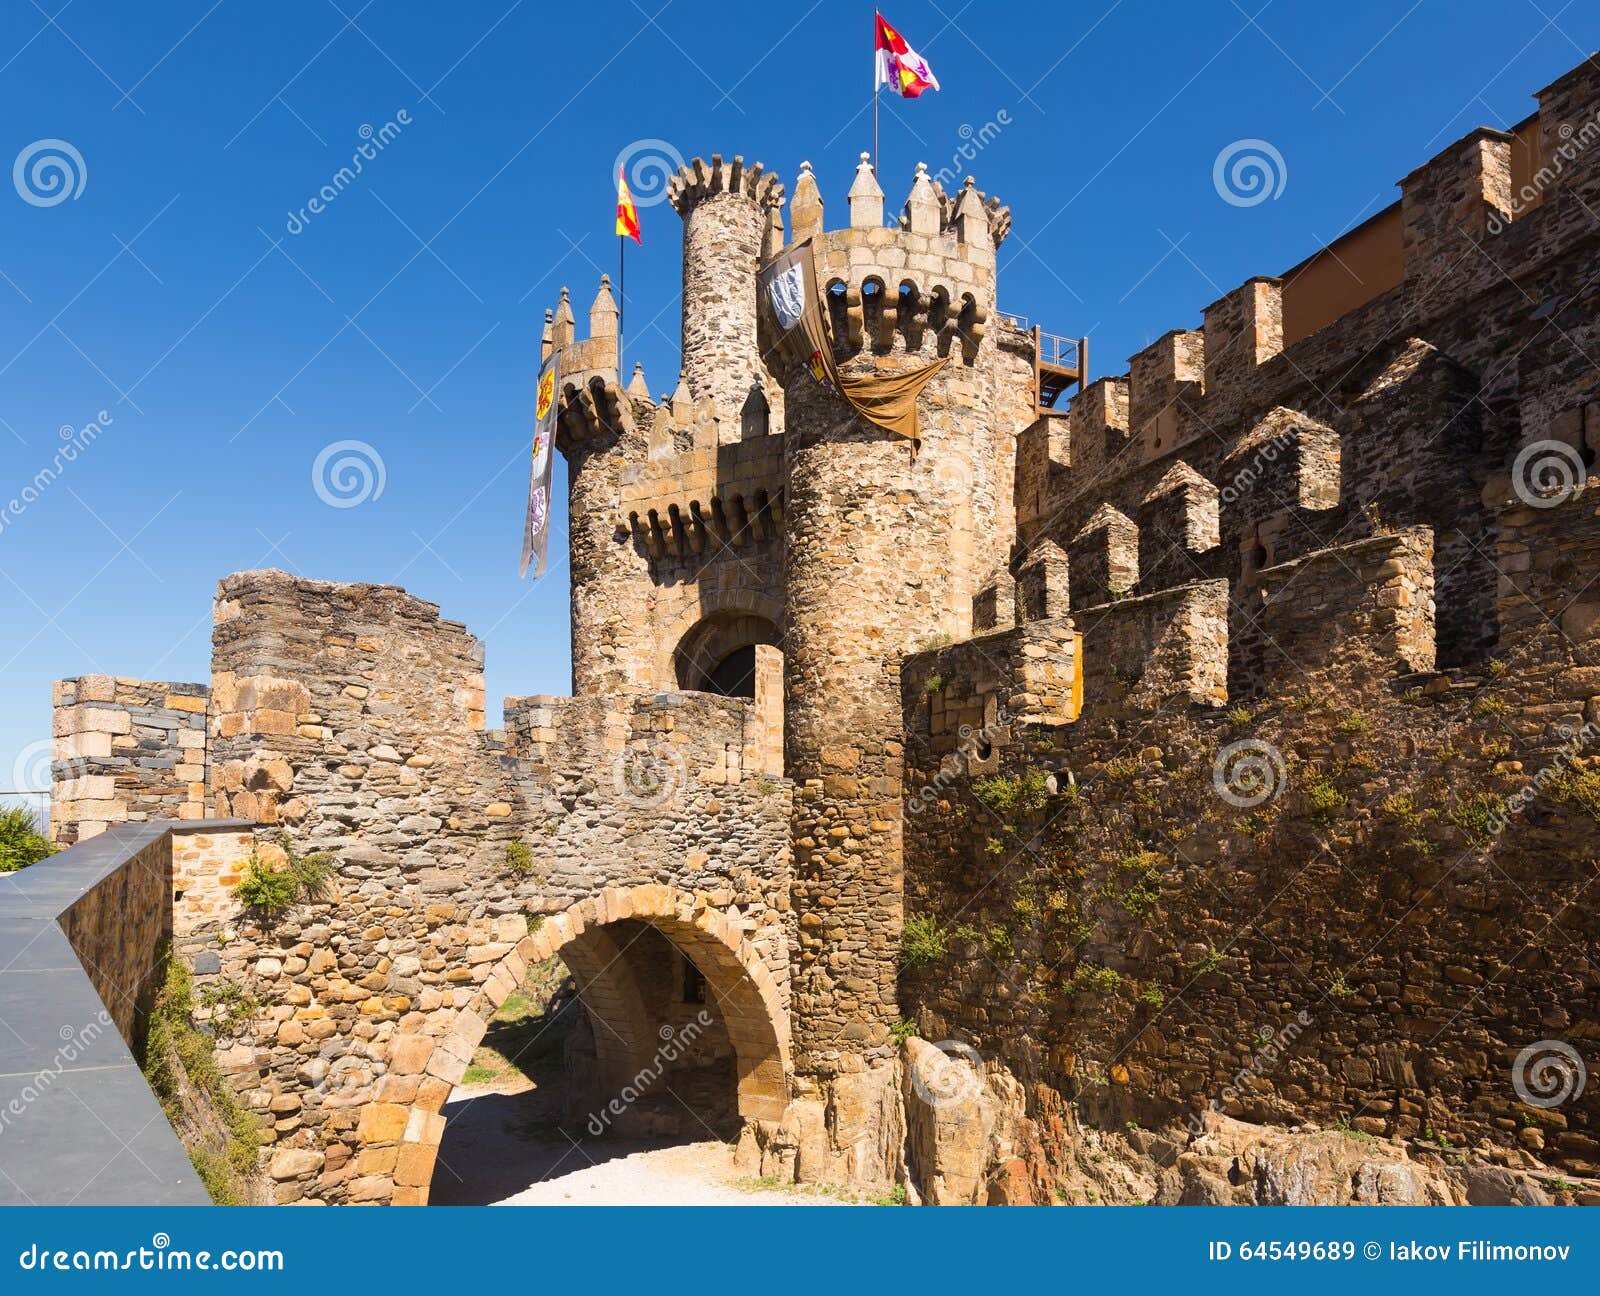 bridge and gate of the templar castle in ponferrada